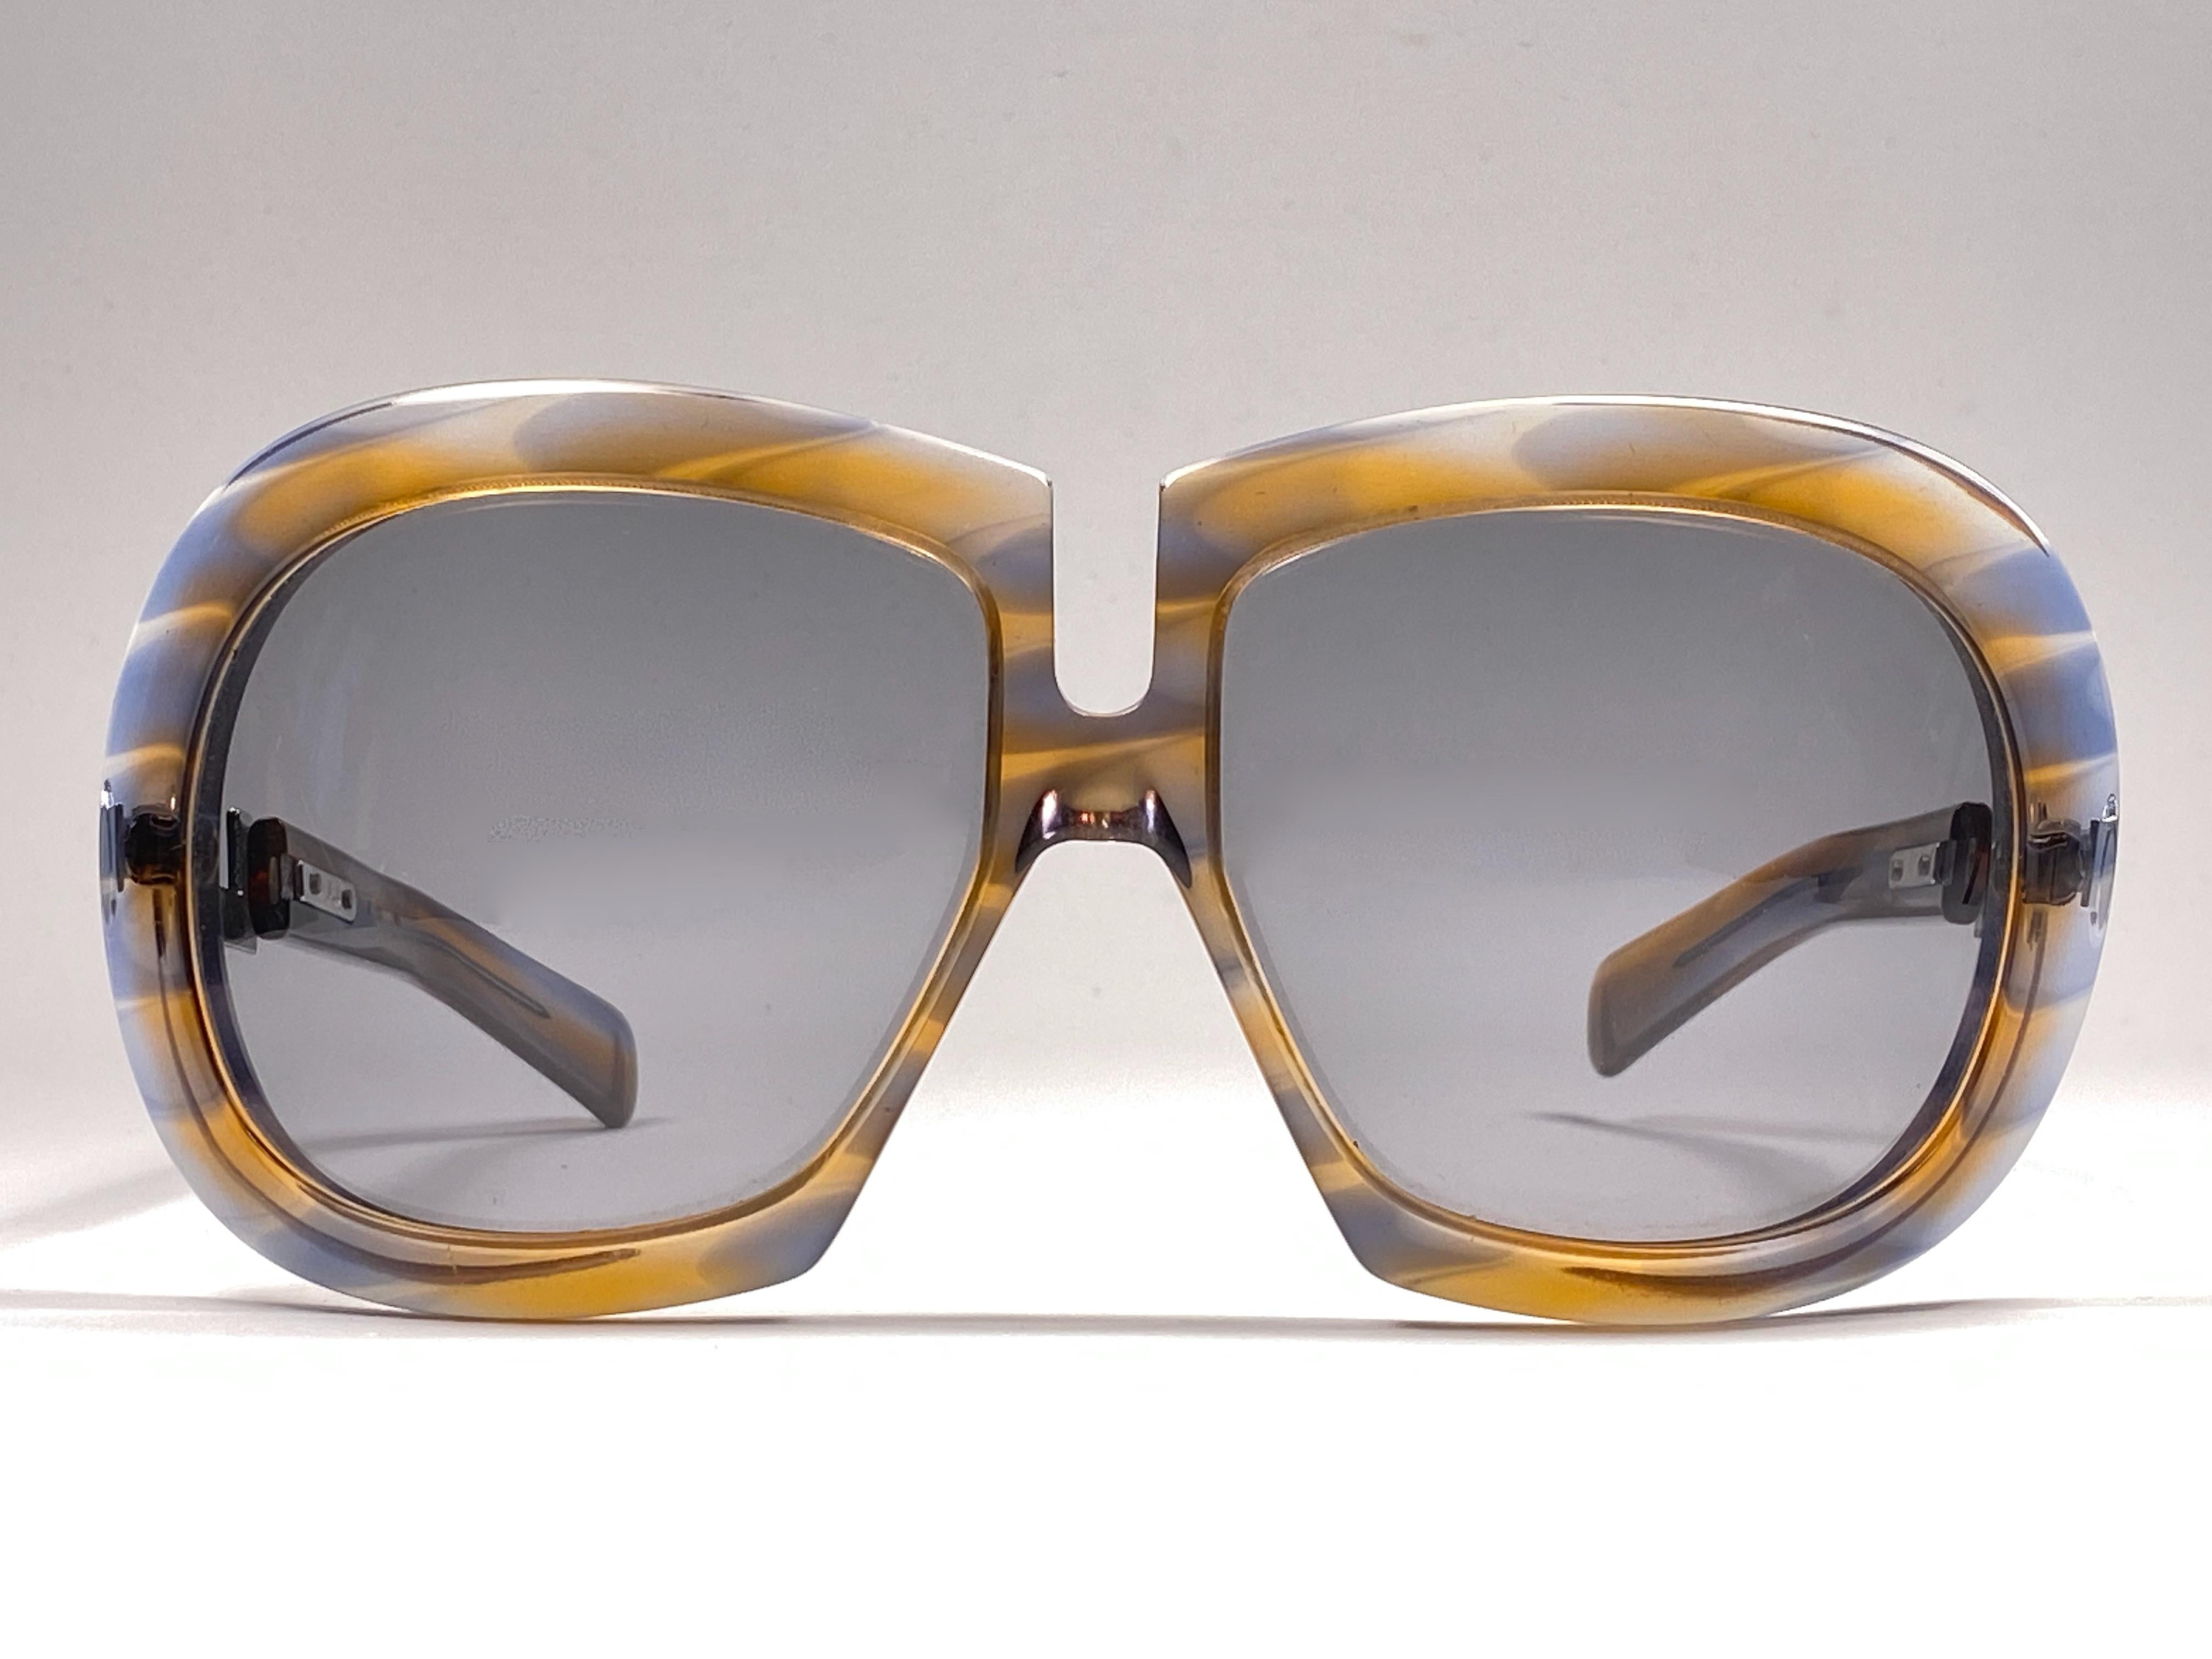 New Vintage Collector Item Silhouette Clear Colours and Silver accents  Monture de lunettes de soleil avec une paire de verres gris moyen impeccables.   

Fabriqué en Allemagne dans les années 1970.

AVANT : 15.5 CMS

HAUTEUR DE LA LENTILLE : 5